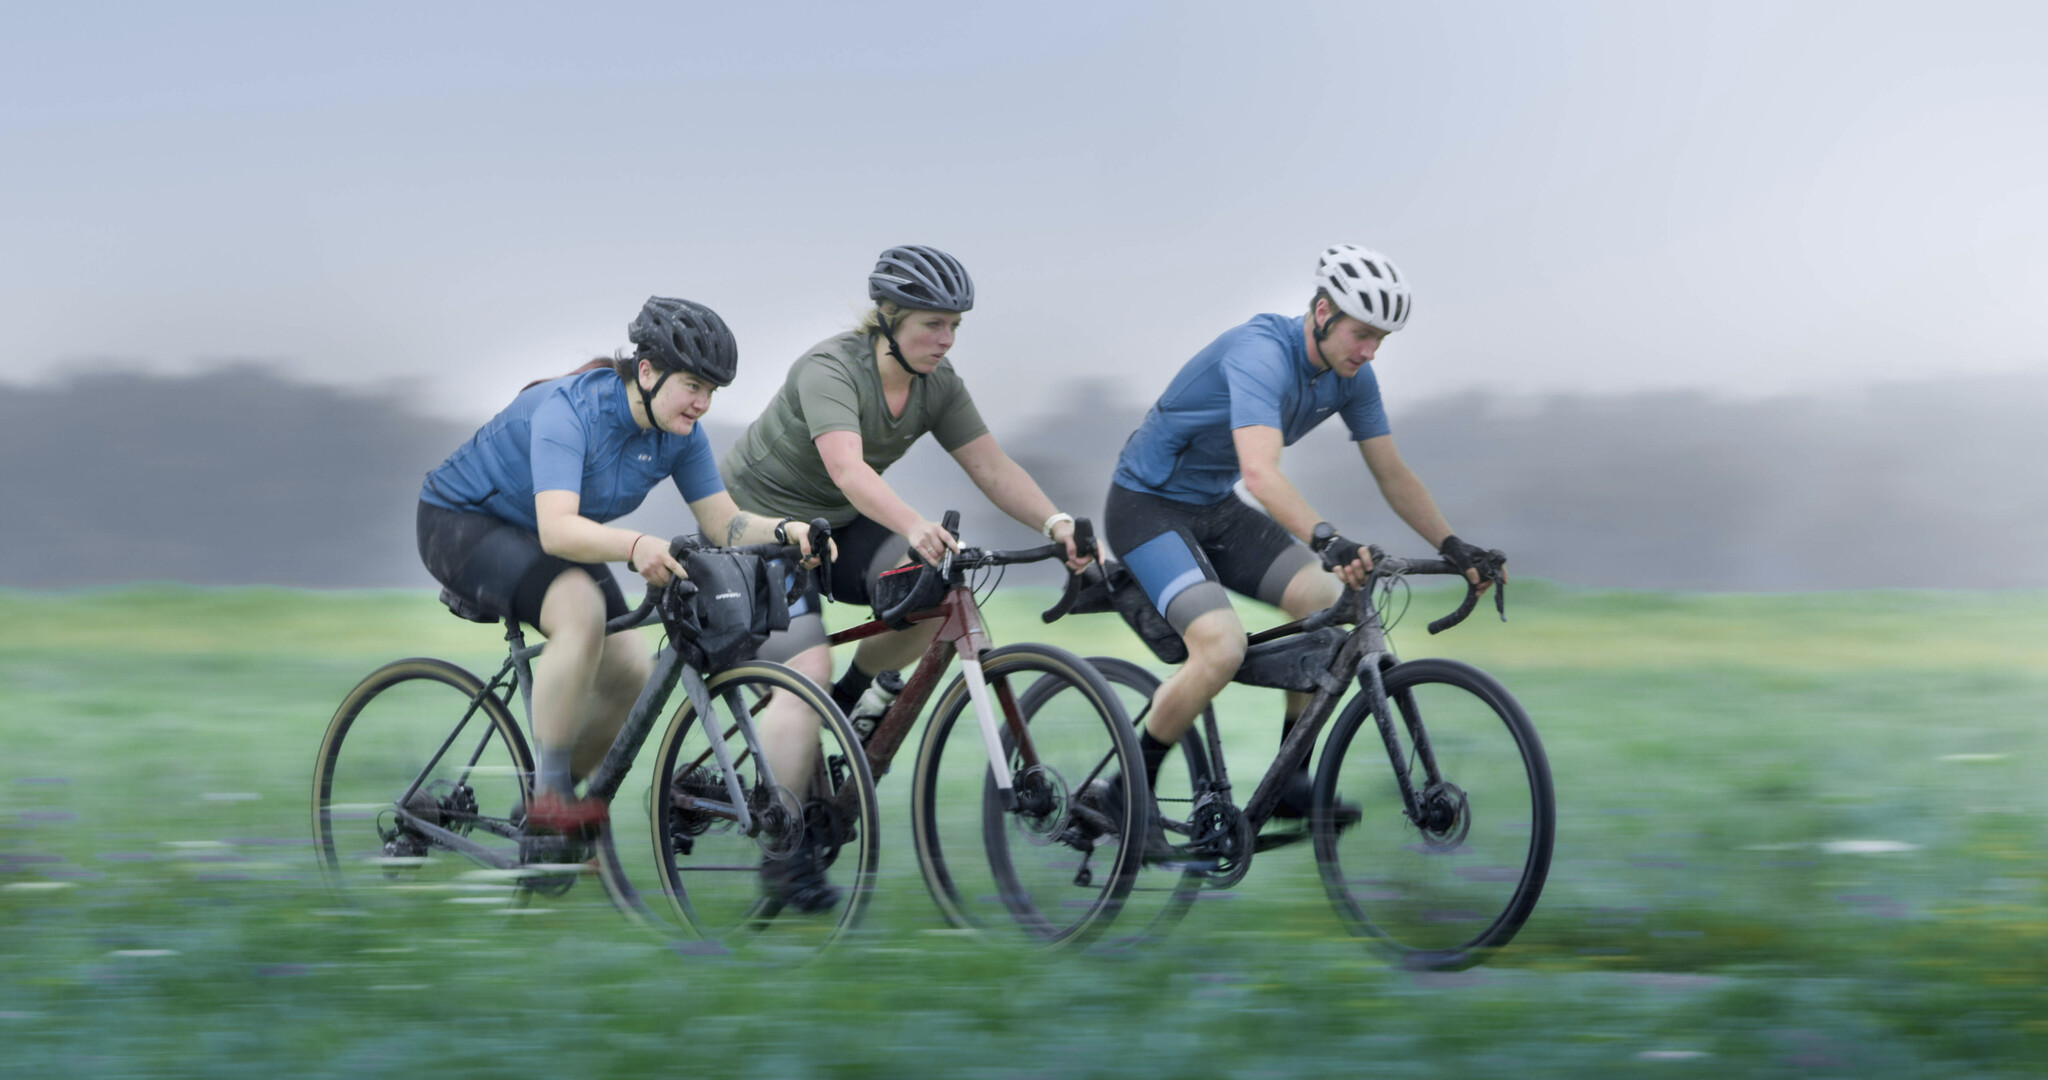 Louis Garneau Group expands gravel range - Products - BikeBiz